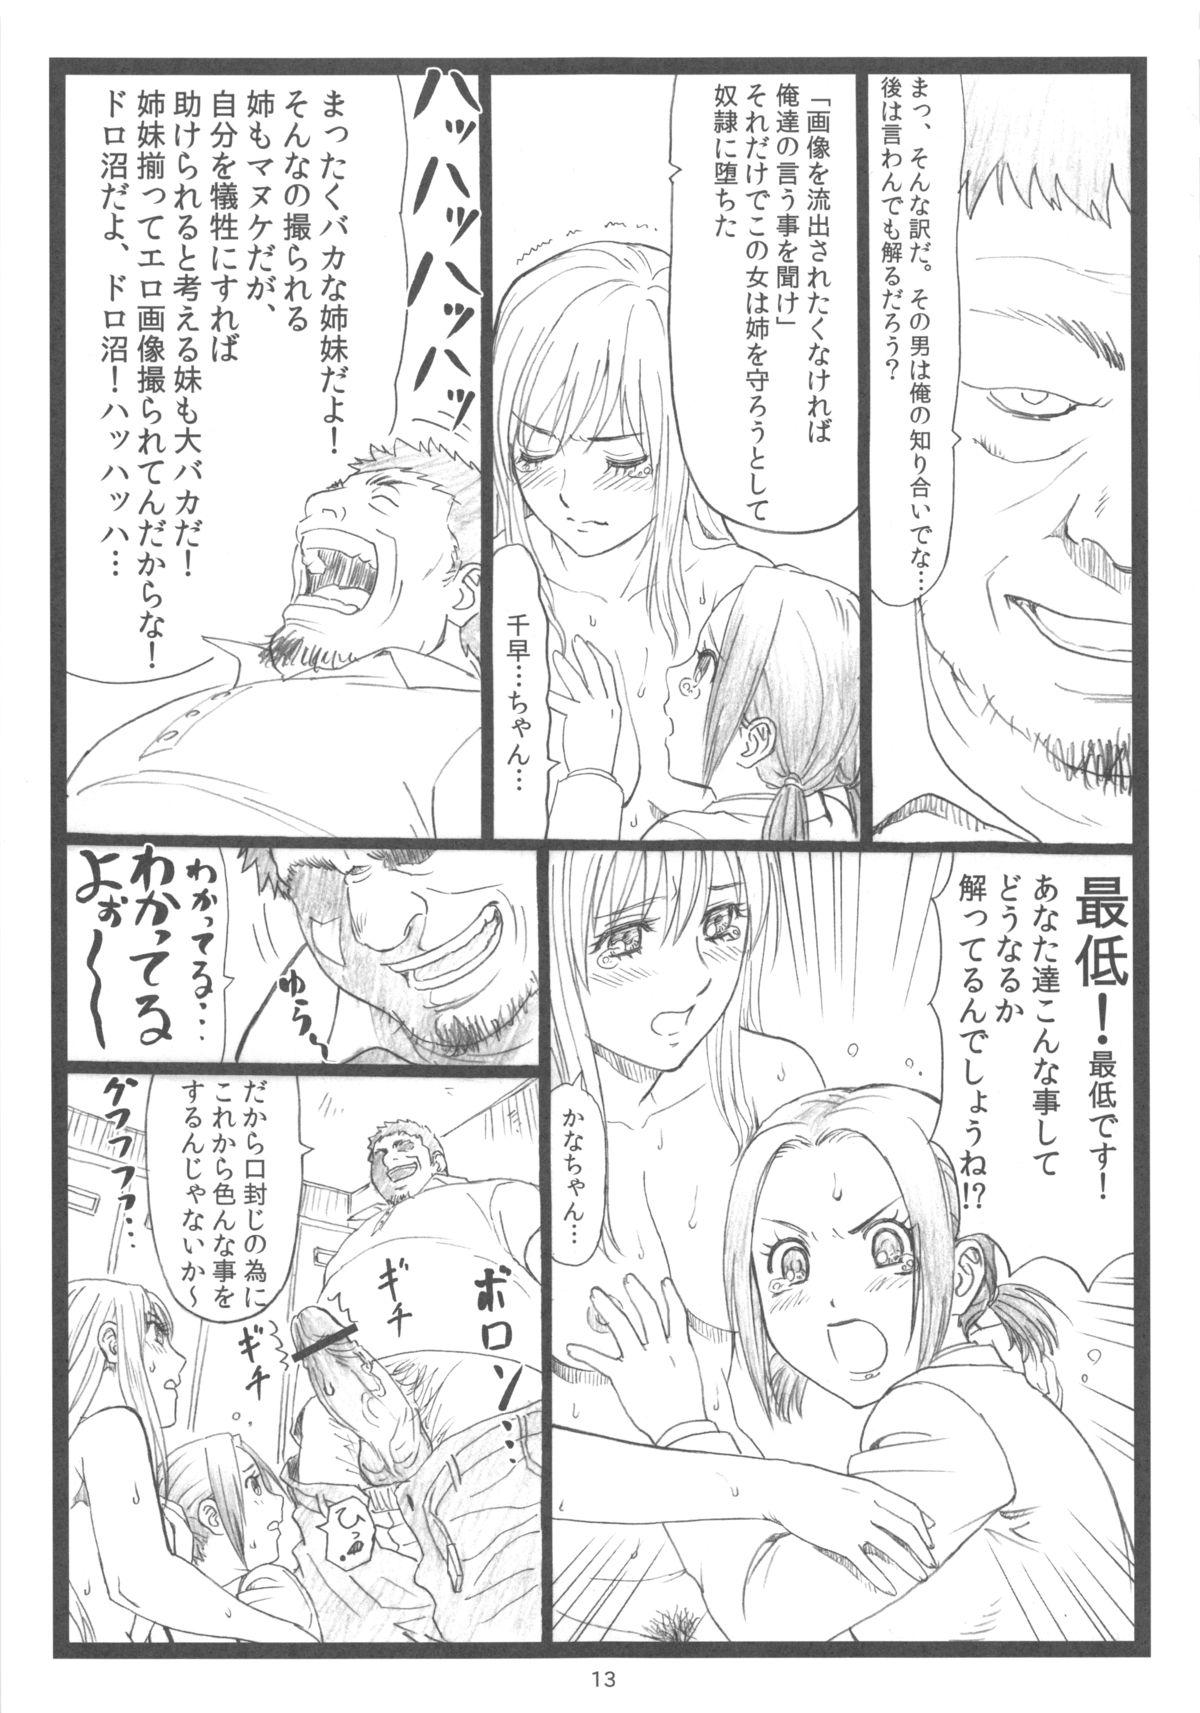 Hot Chihaya chiru - Chihayafuru Shecock - Page 12